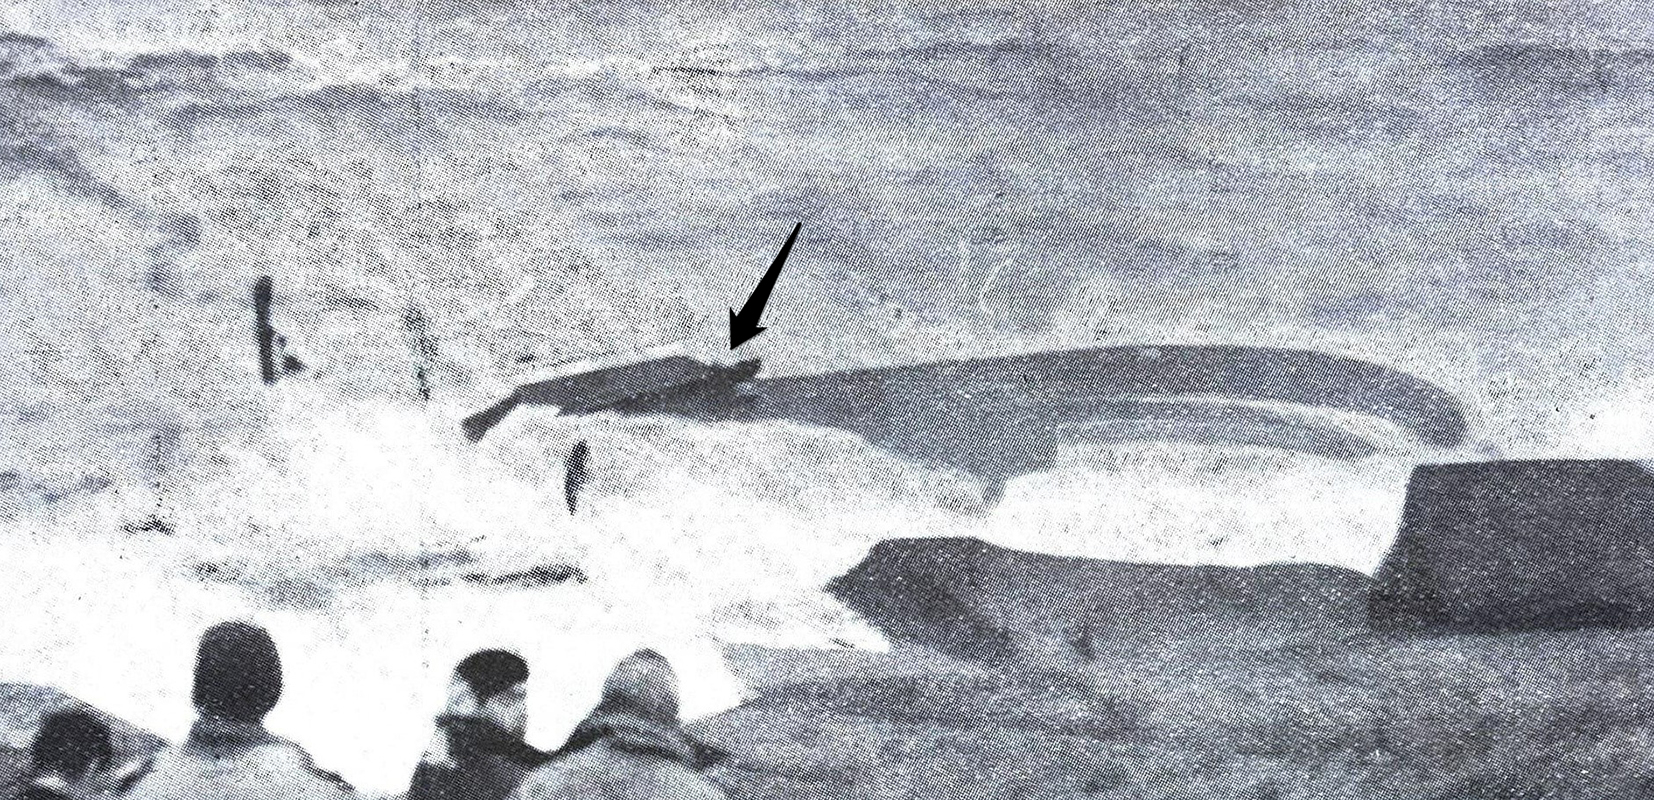 Último tripulante agarrado a la escala real momentos antes de ser arrastrado por el mar. Revista Oficema de febrero de 1961